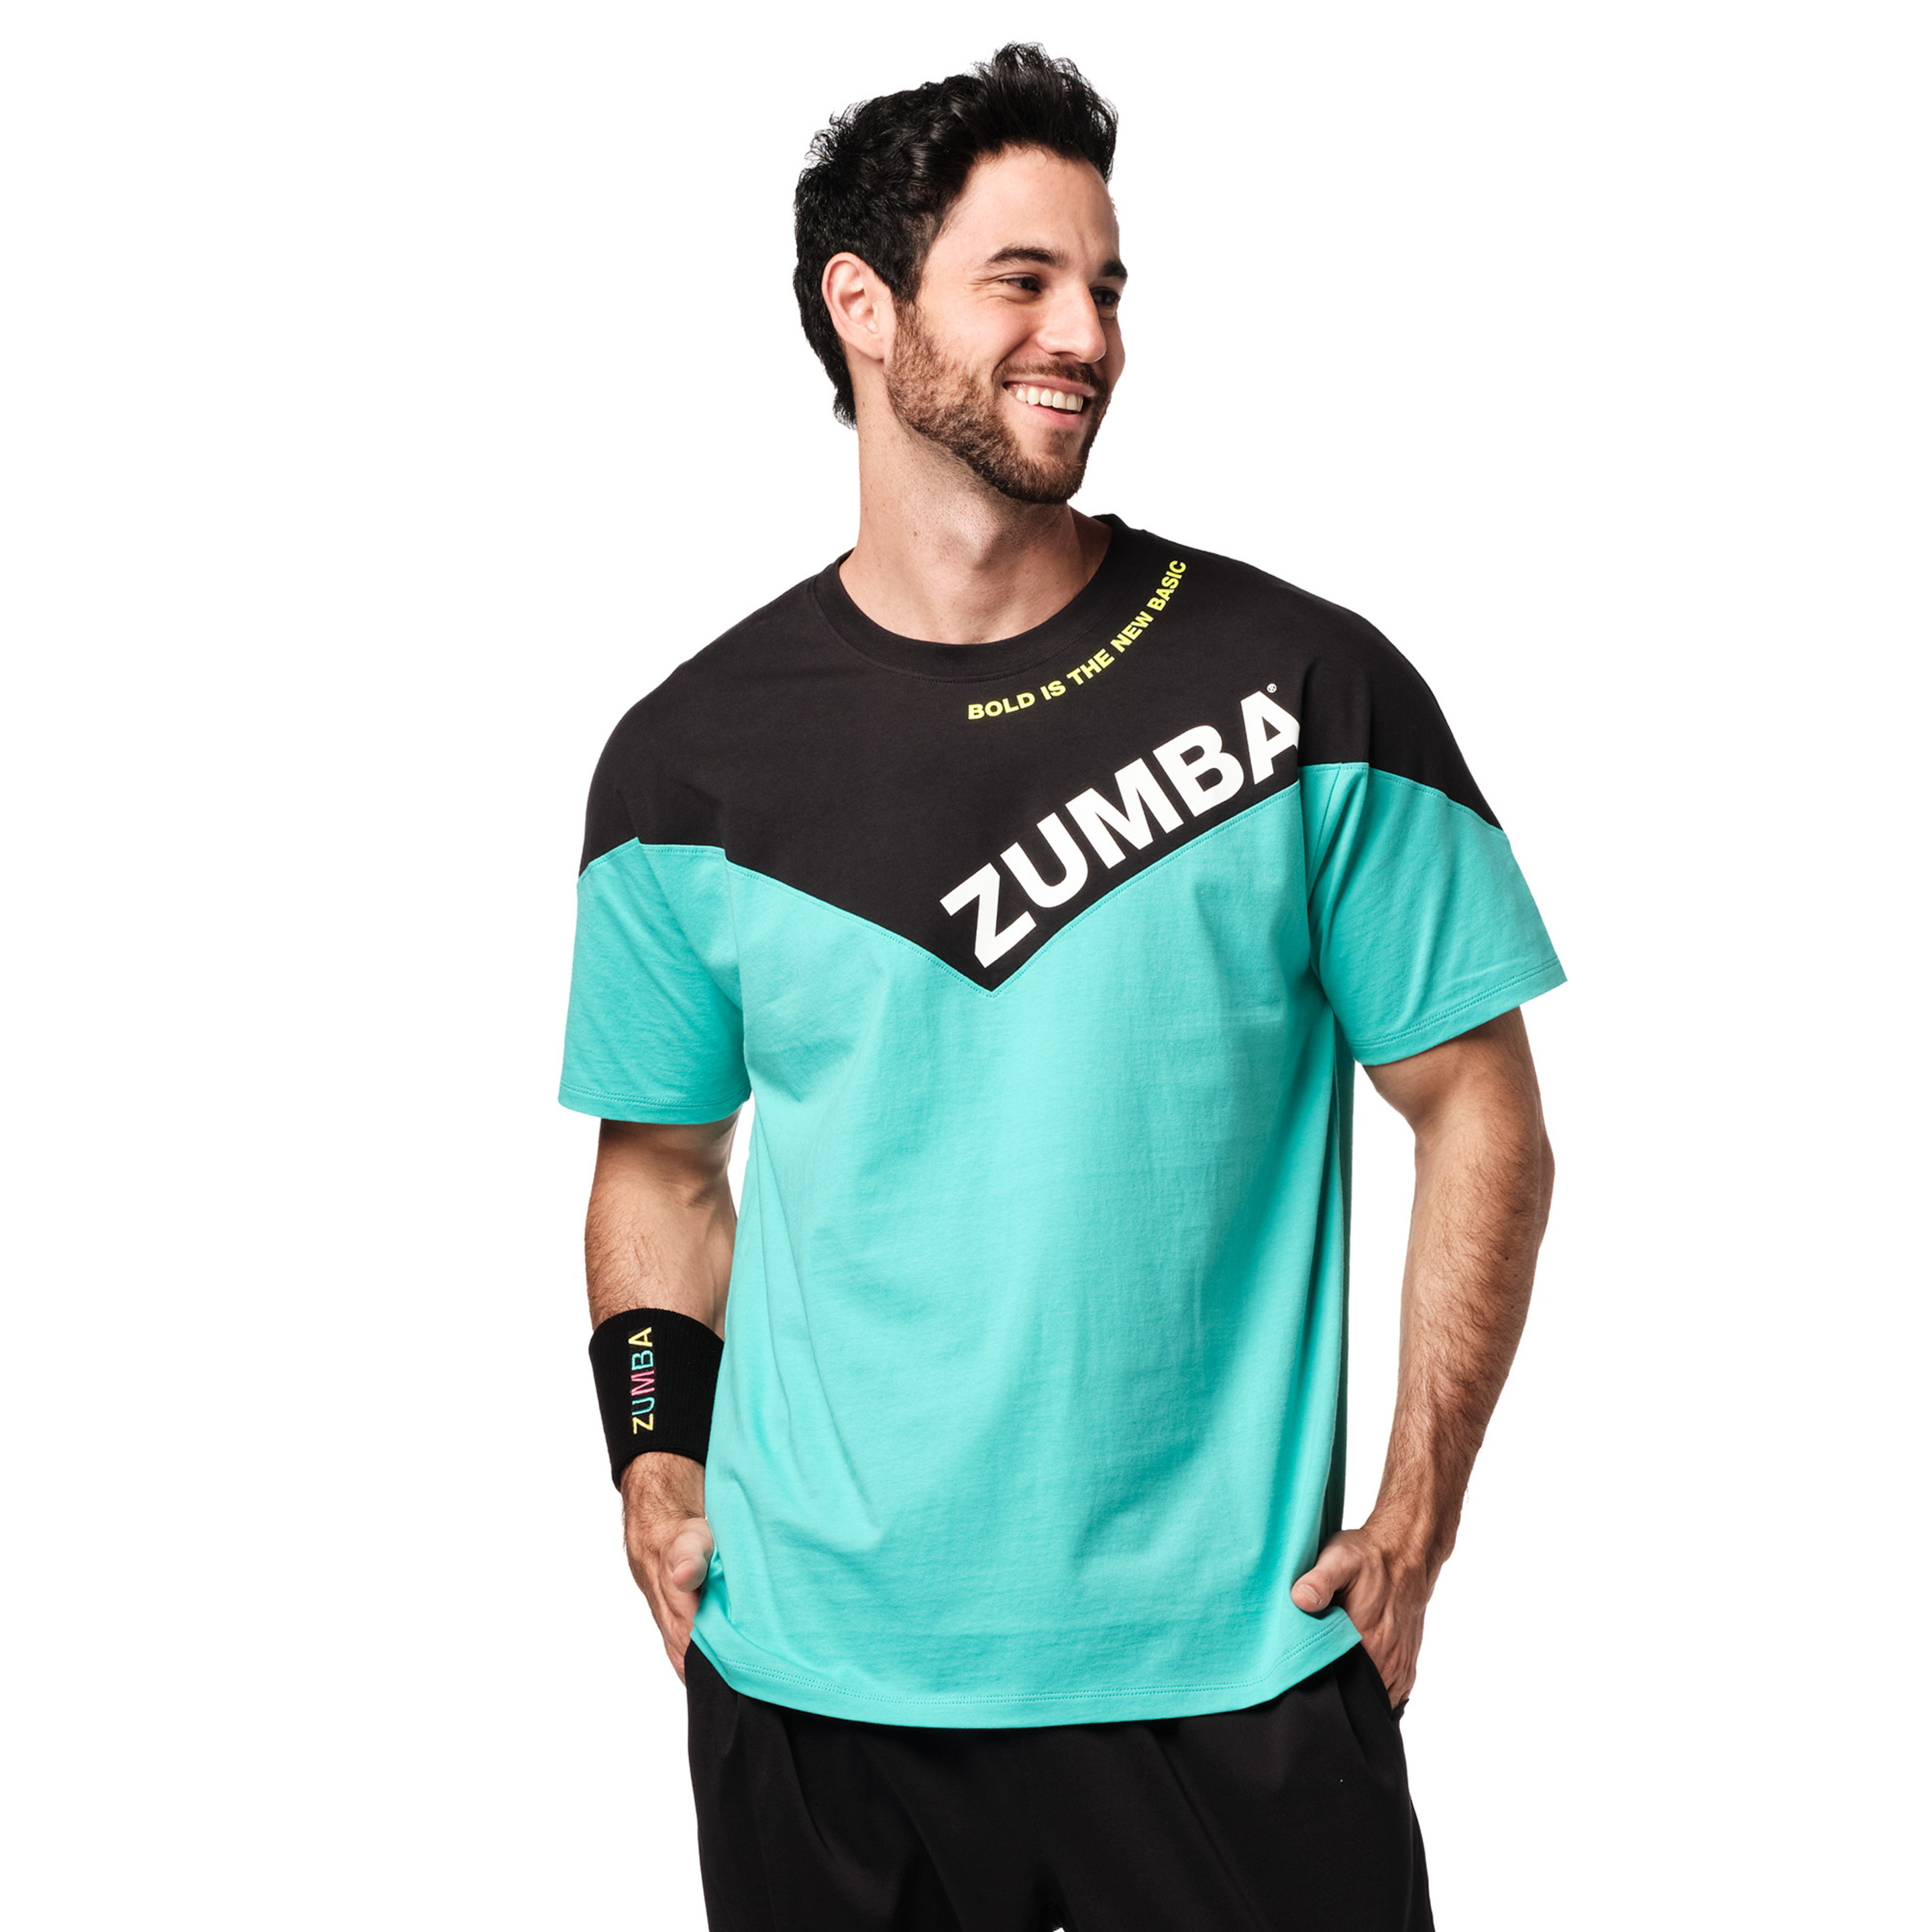 Camiseta Zumba Bold New Basic